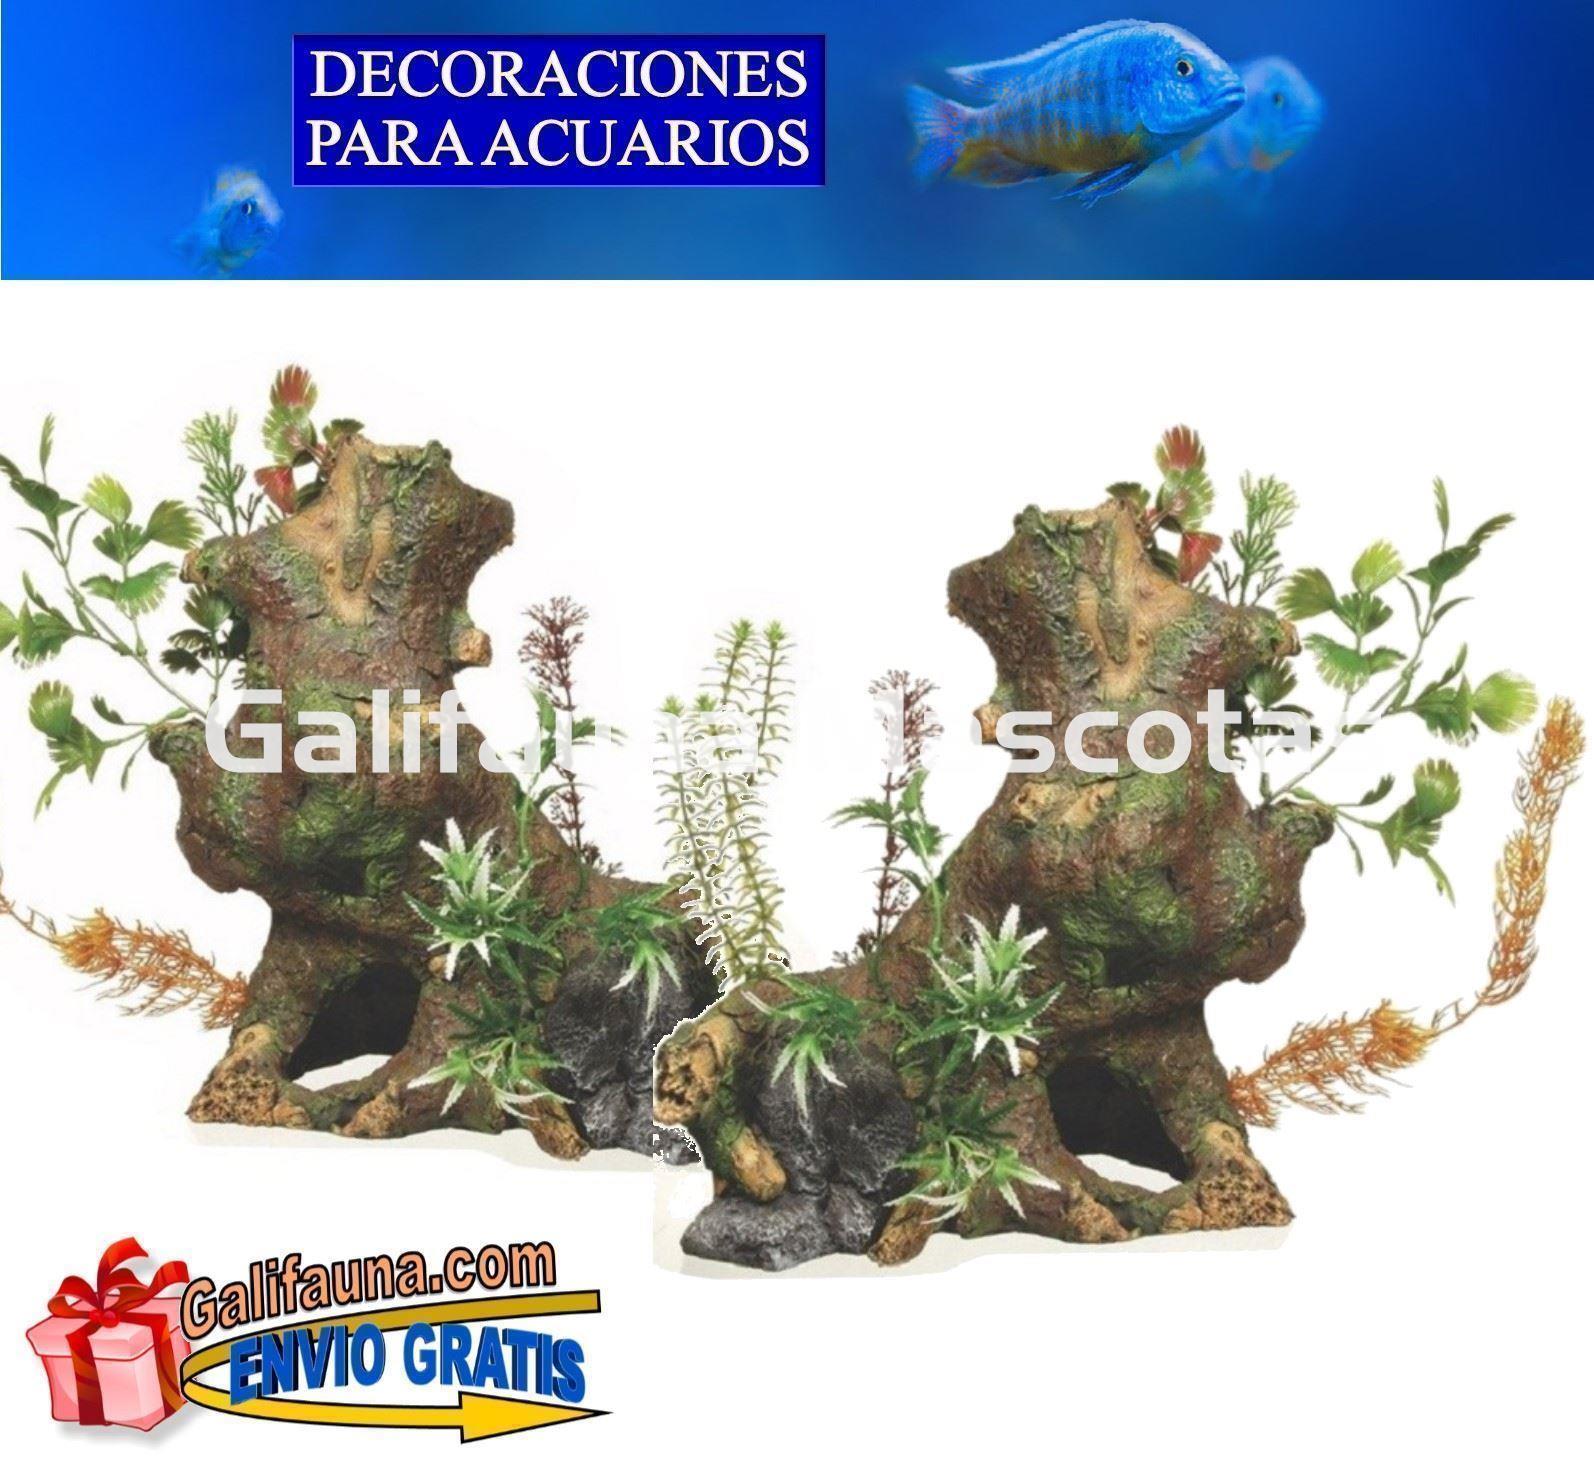 DOBLE Decoración GIGANTE Tronco con plantas. Ornamento especial para acuarios grandes. - Imagen 1